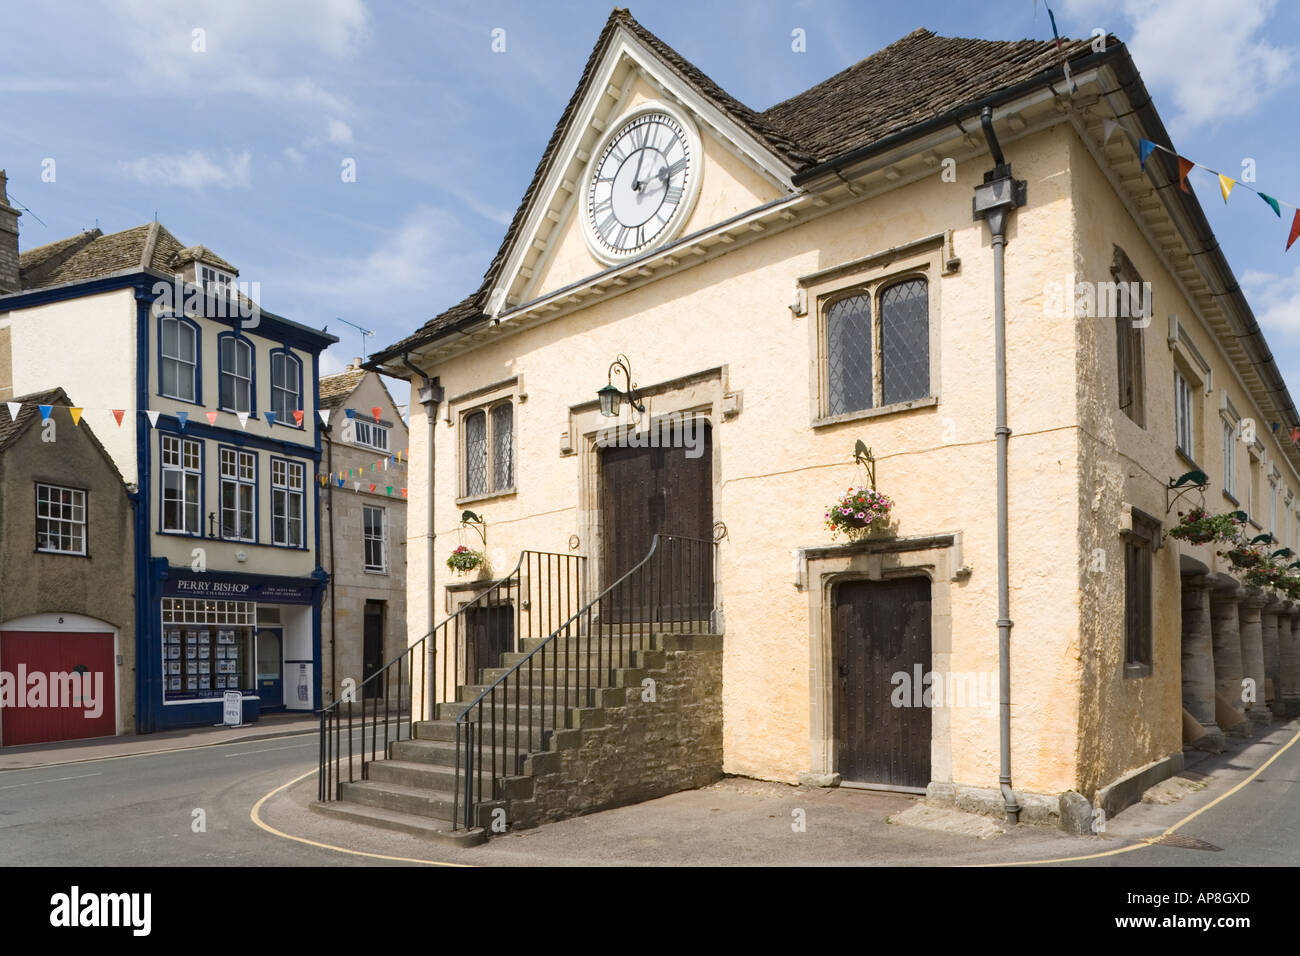 Le marché du 17ème siècle située sur la ville de Cotswold, Tetbury Gloucestershire Banque D'Images